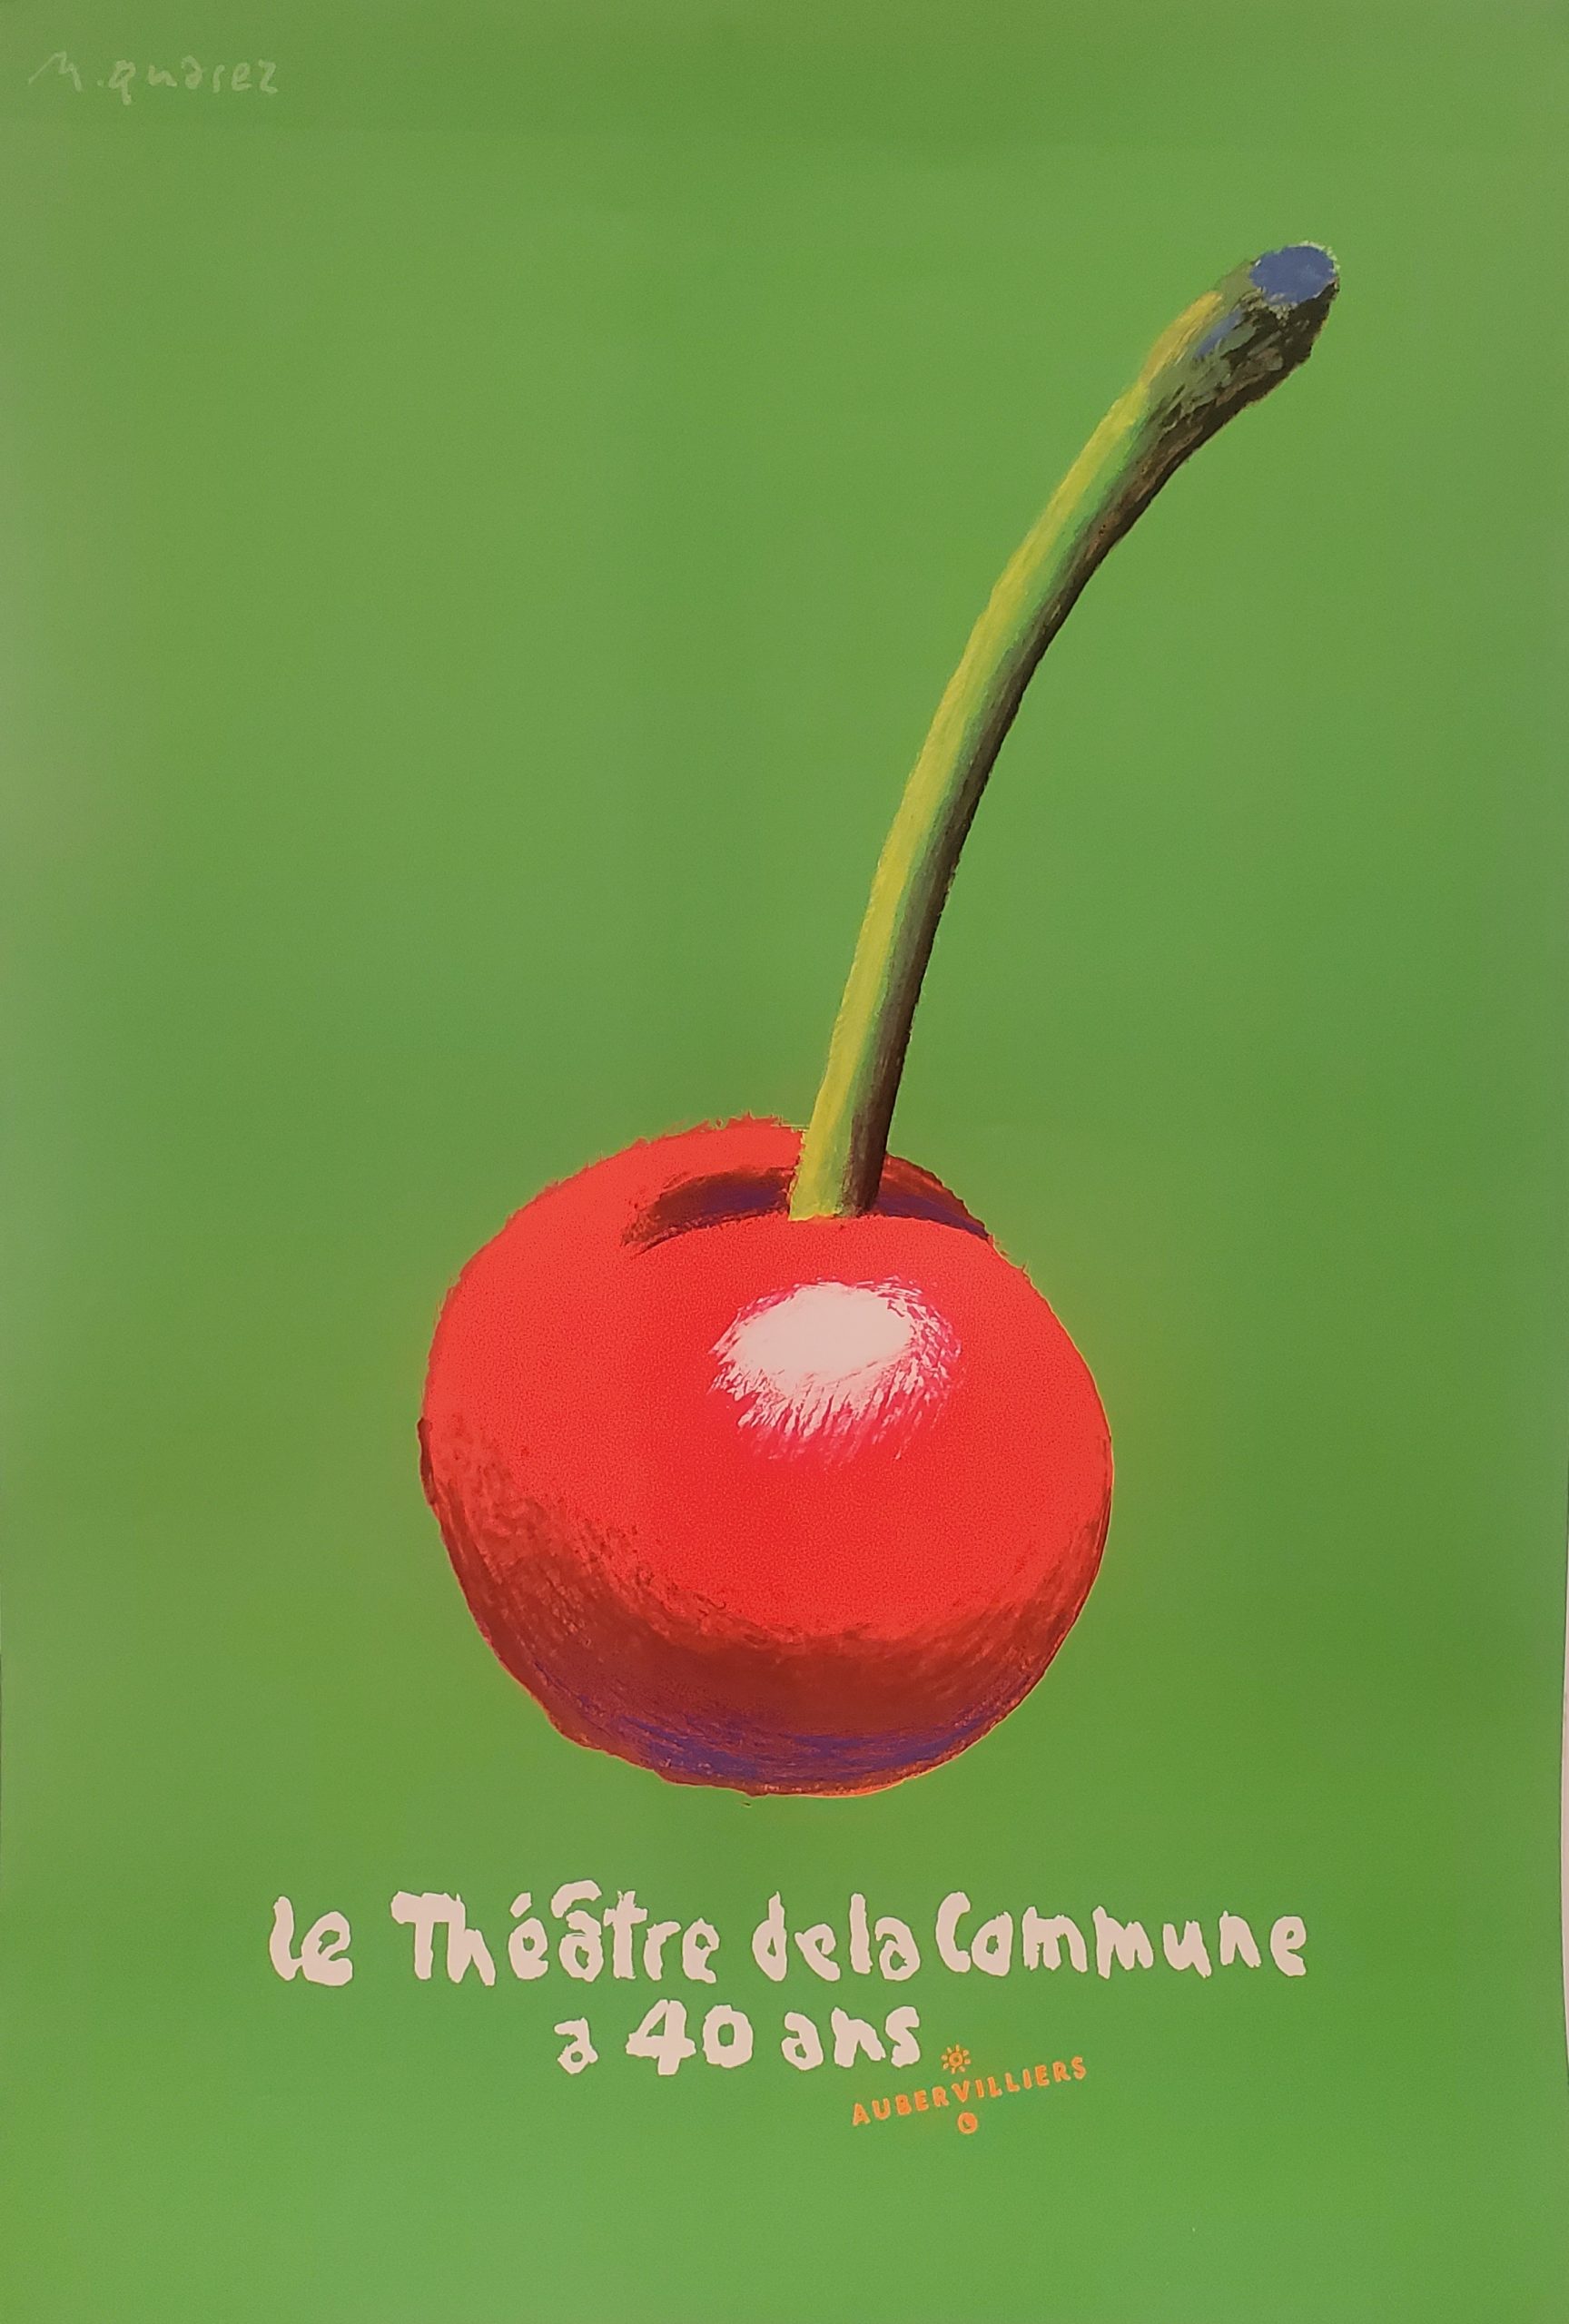 Théâtre de la commune Quarez Cherry Gallery Original Vintage Poster